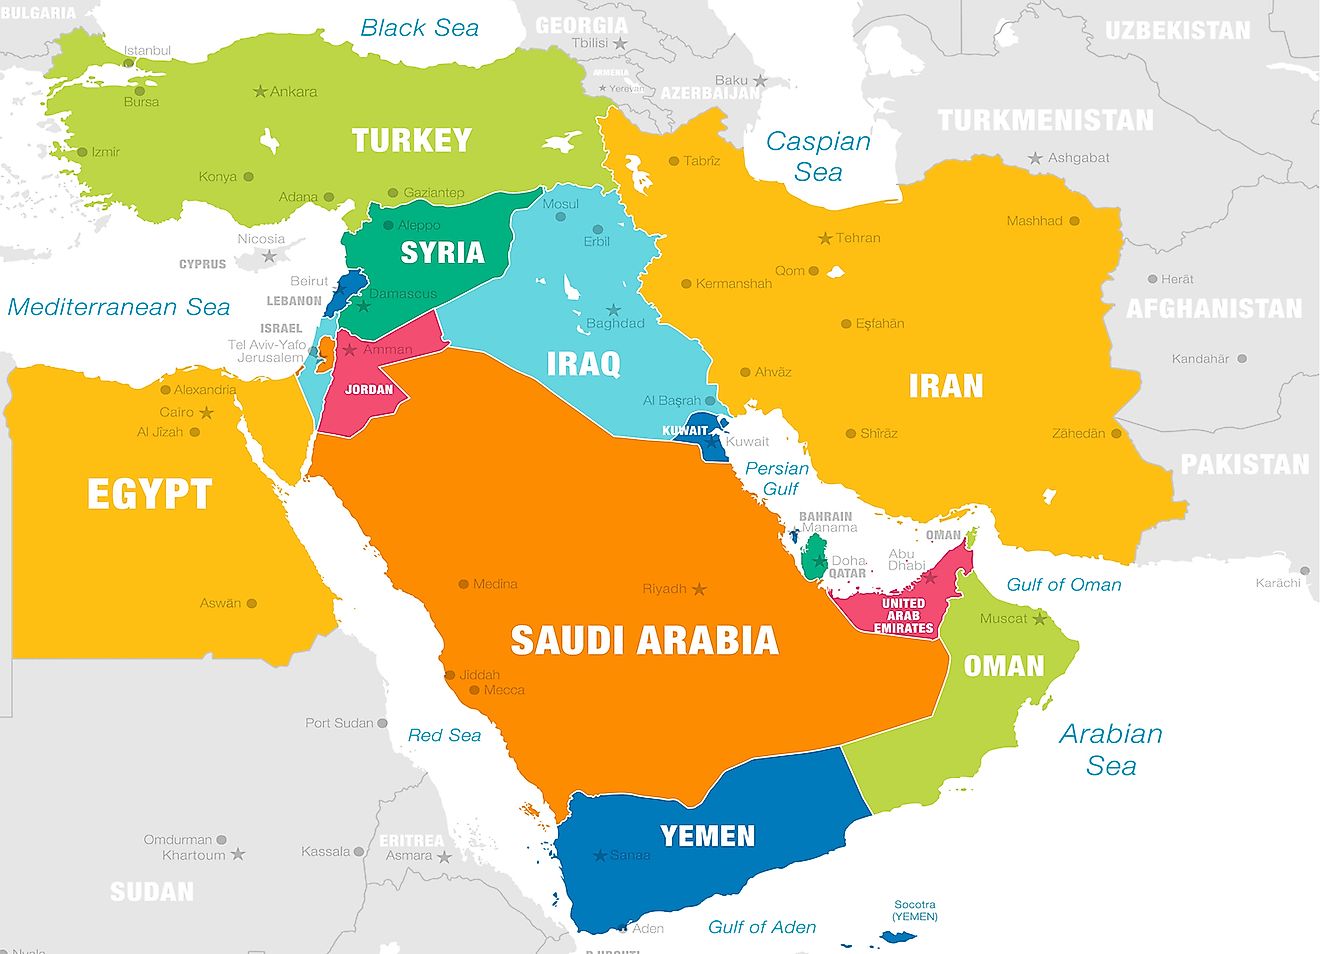 मध्य पूर्व में कितने देश हैं? - वर्ल्डएटलस